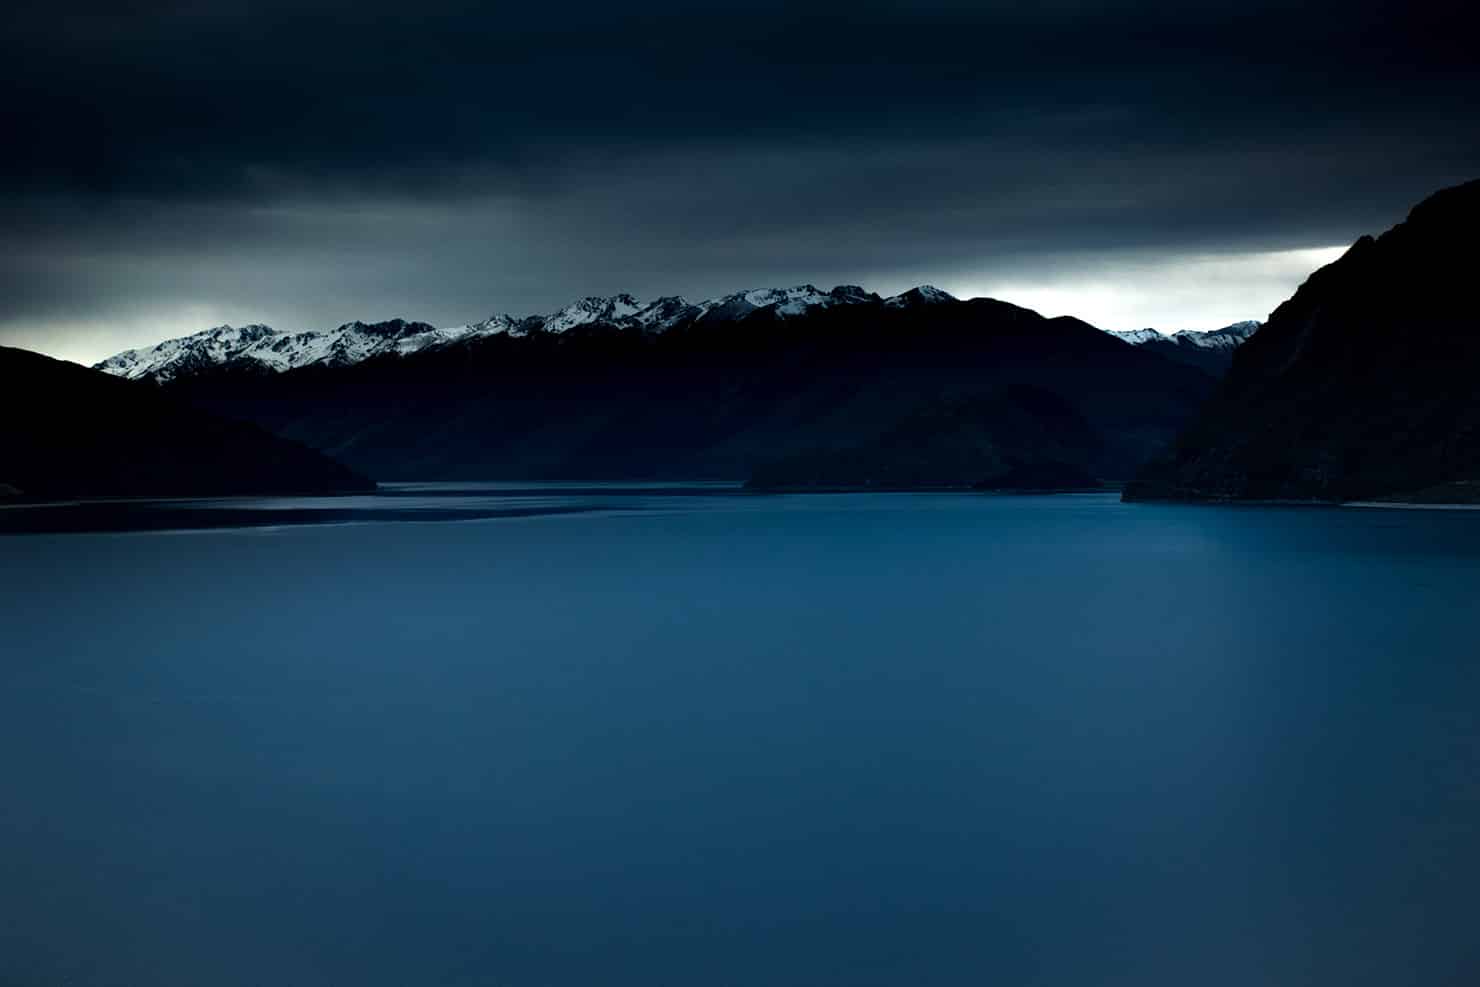 Le lac de Wanaka et ses sommets enneigés